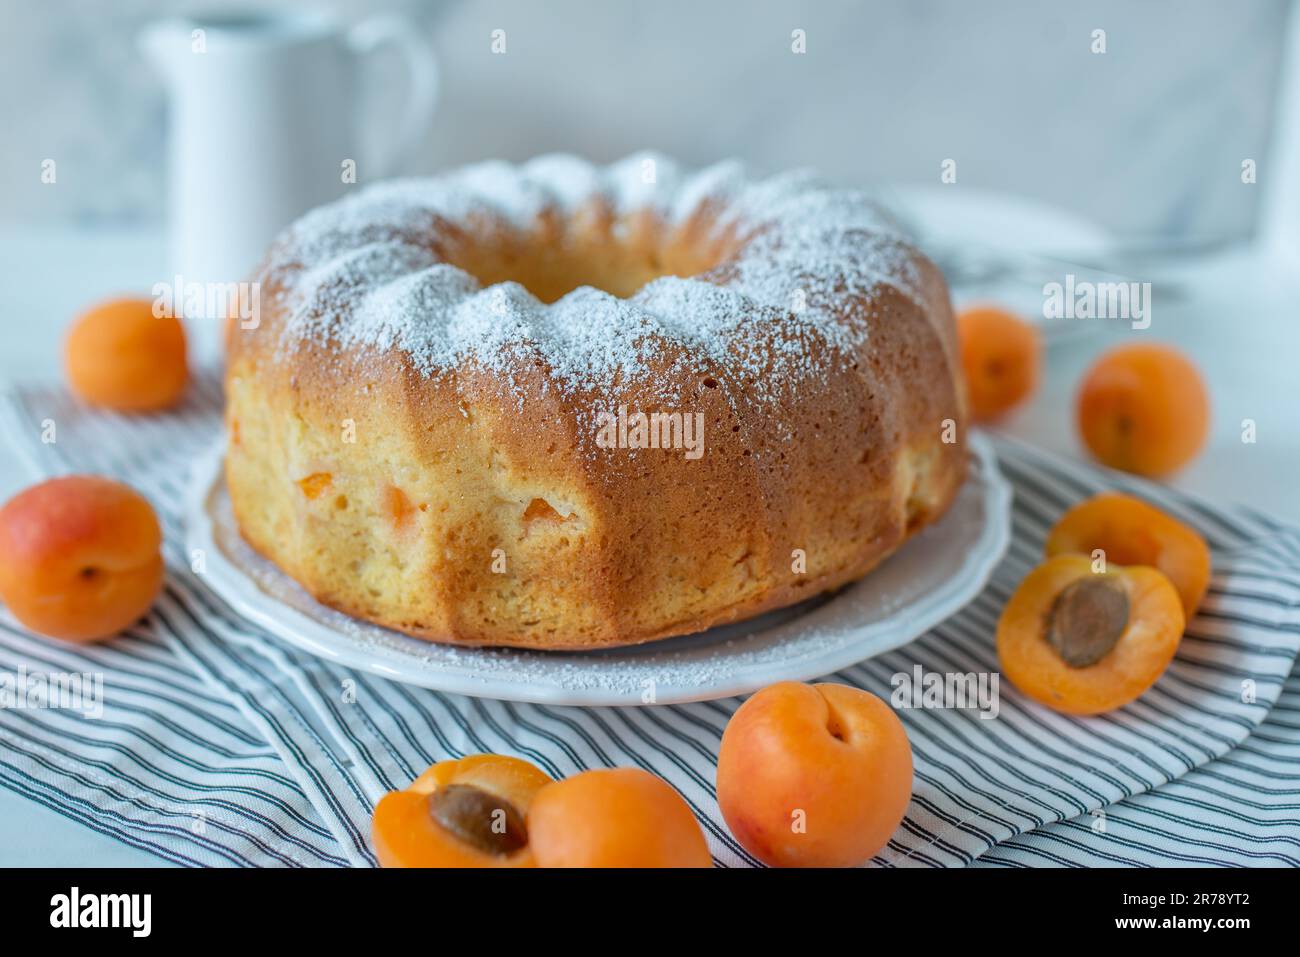 dolce torta di bundt alla vaniglia fatta in casa con albicocche Foto Stock